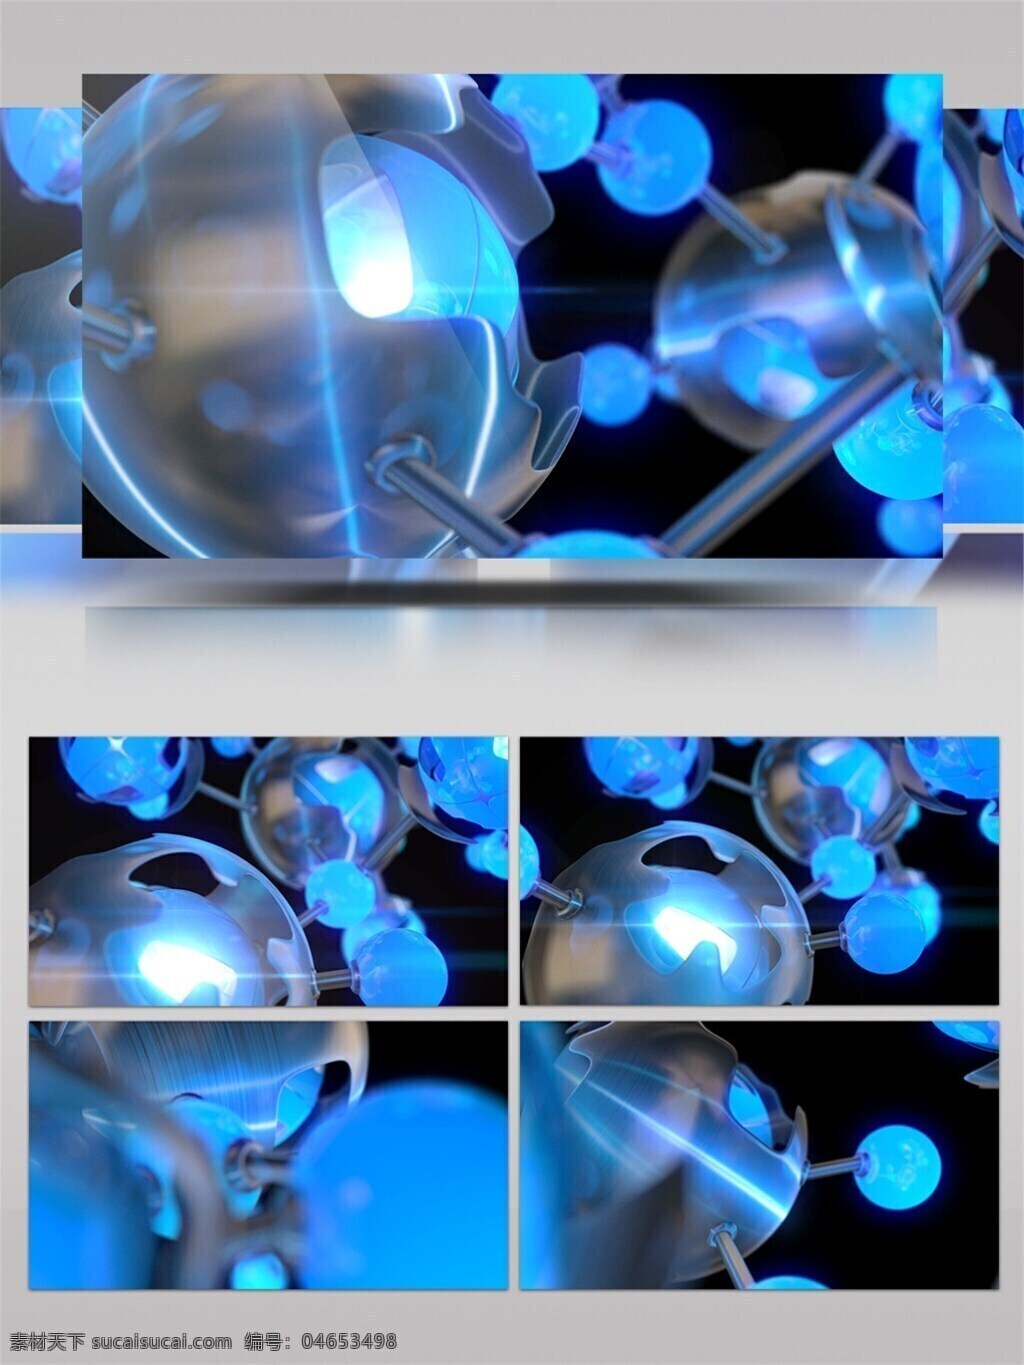 超 清 蓝色 水晶球 转动 视频 超清画质 梦幻蓝色 旋转 3d 视频素材 动态视频素材